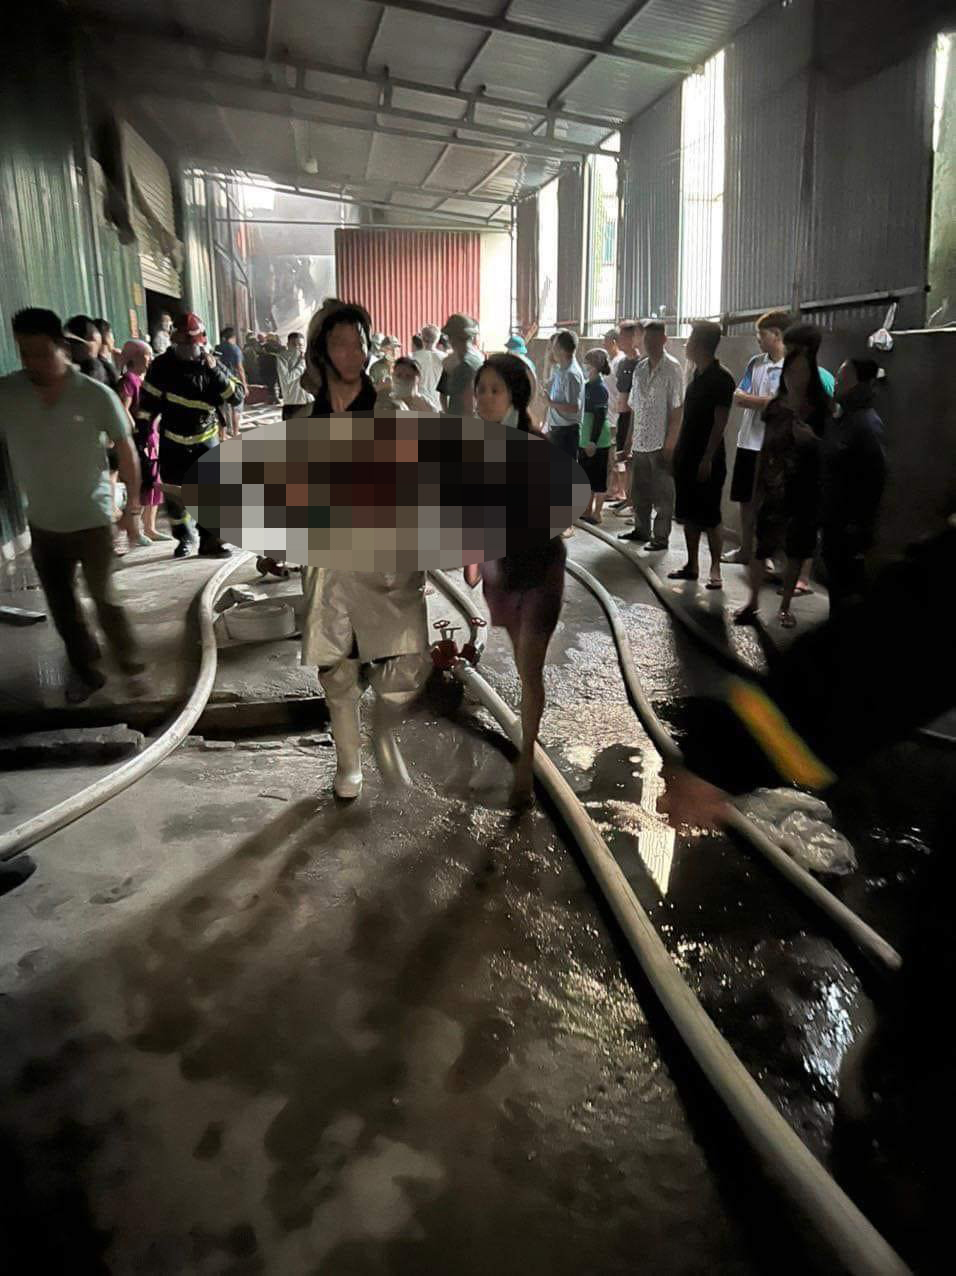 Vụ cháy xưởng chăn ga ở Hà Nội khiến 3 mẹ con tử vong: Diễn biến mới nhất - Ảnh 2.